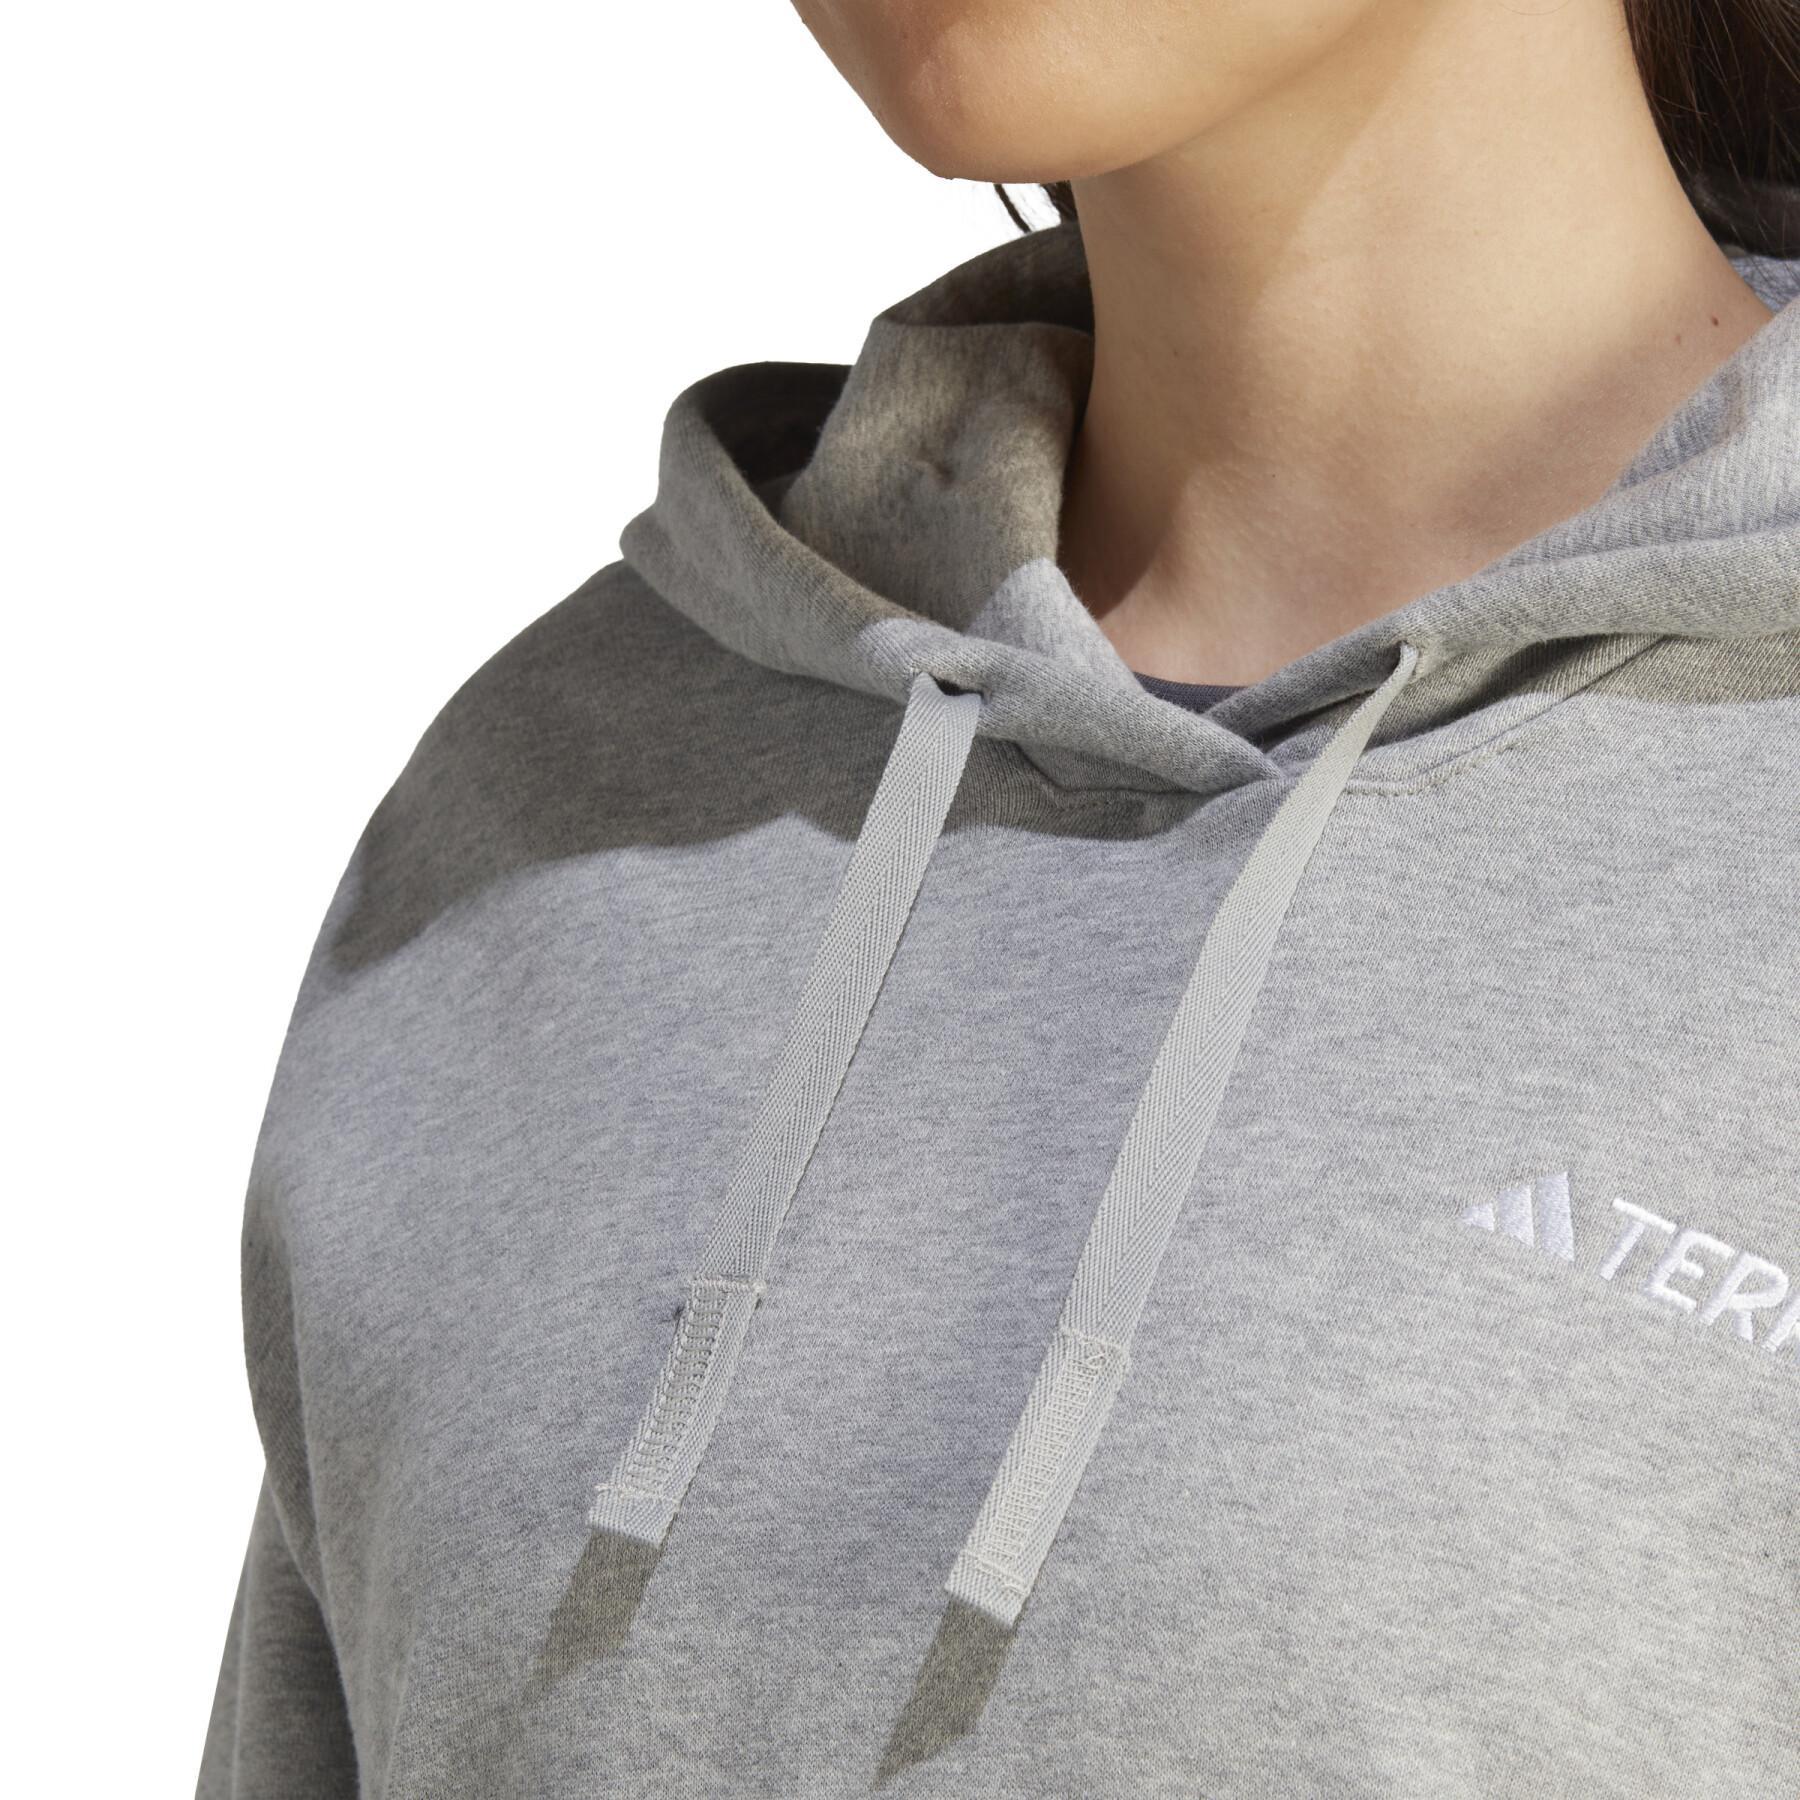 Sweatshirt woman adidas Terrex Logo